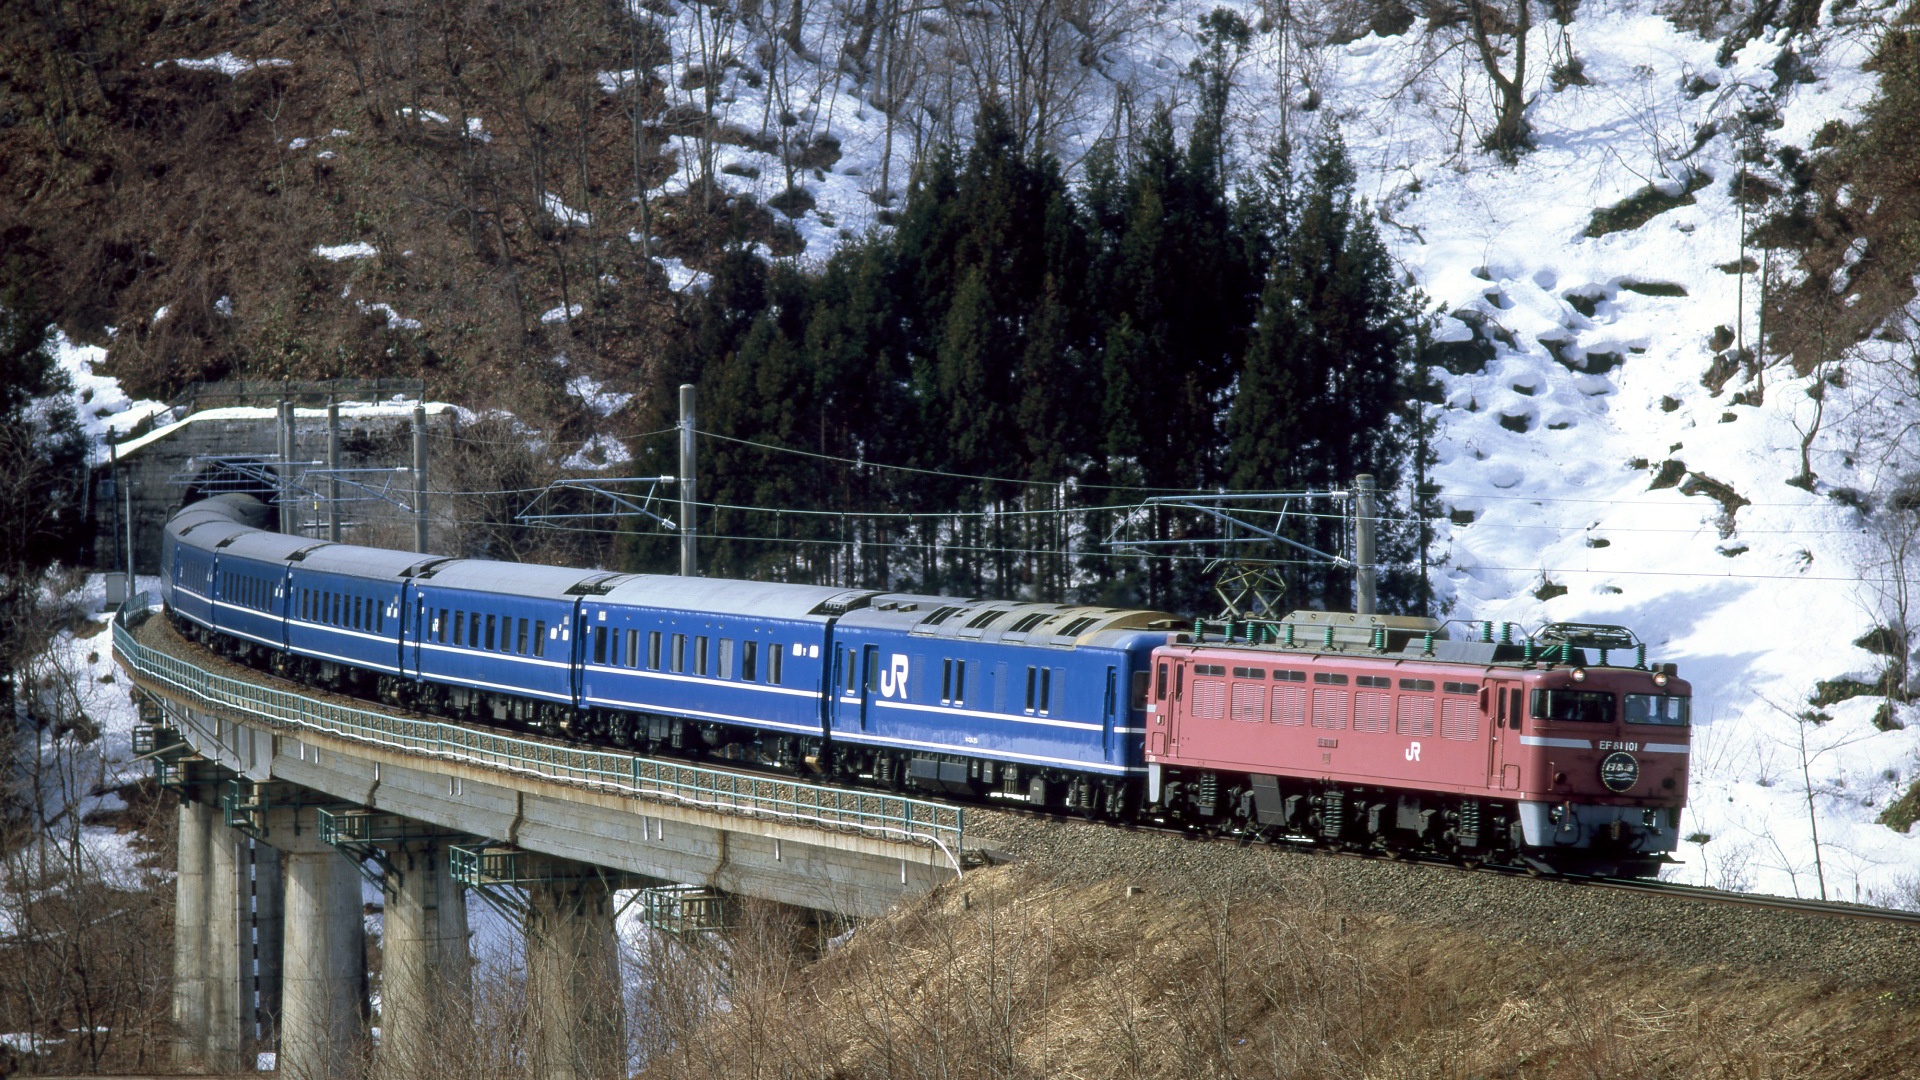 鉄道 電気機関車 Ef81牽引 寝台特急 日本海 壁紙19x1080 壁紙館